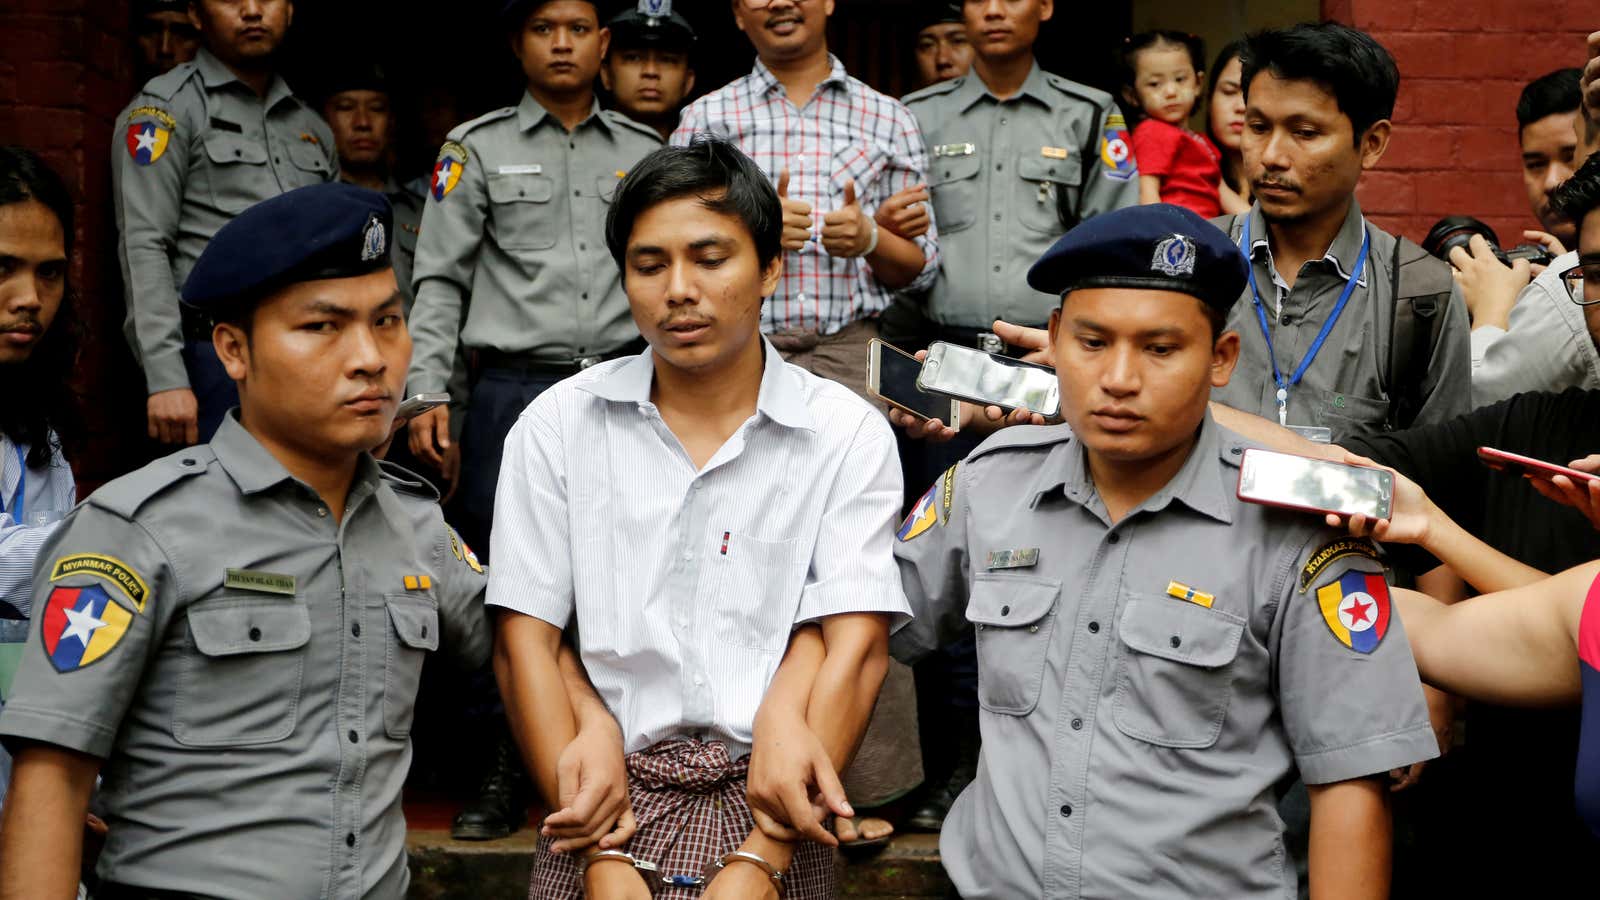 Reuters journalists Kyaw Soe Oo, and Wa Lone, behind, in August 2018.